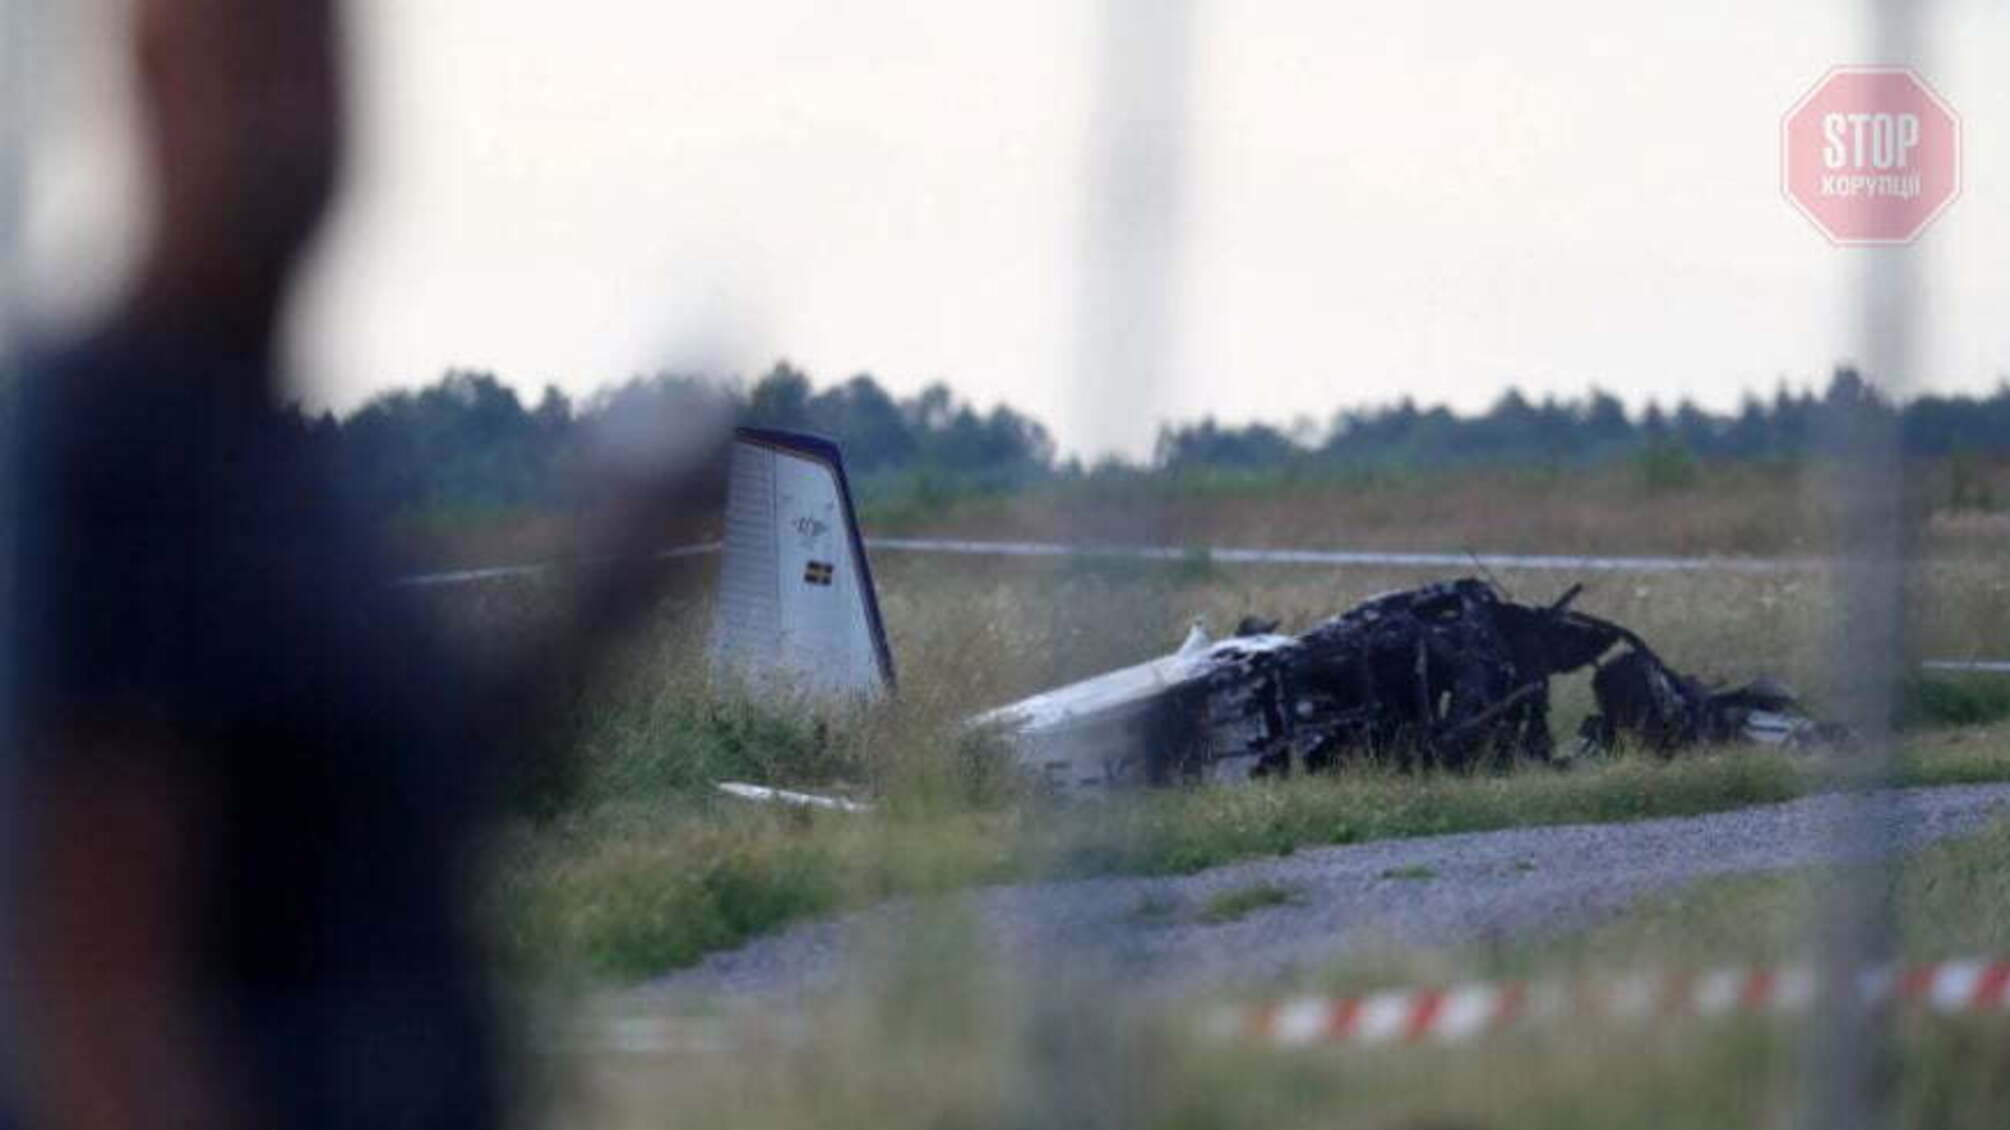 У Швеції біля аеропорту розбився літак, 9 людей загинули (фото)